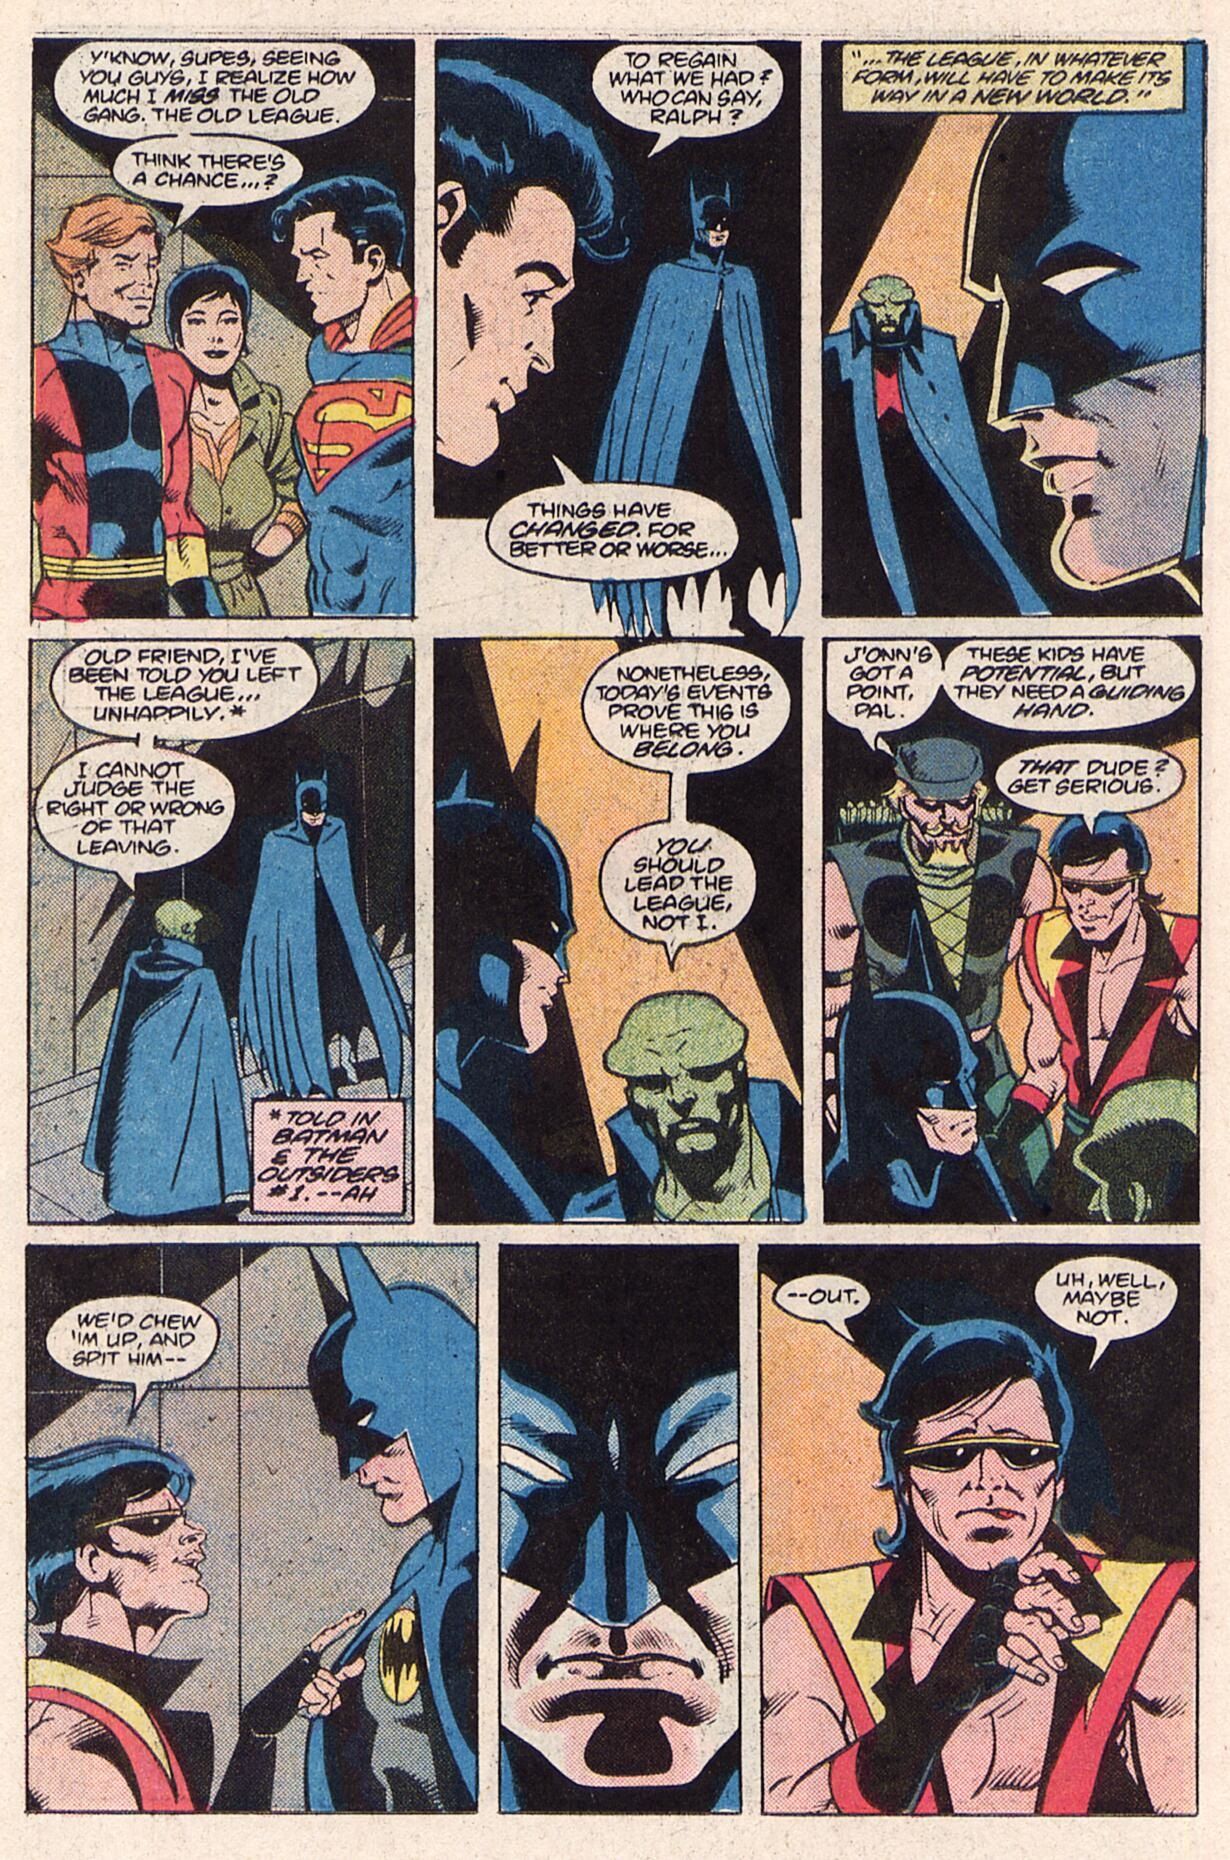 Какова была тайная причина, по которой Бэтмен воссоединился с Лигой справедливости после кризиса?